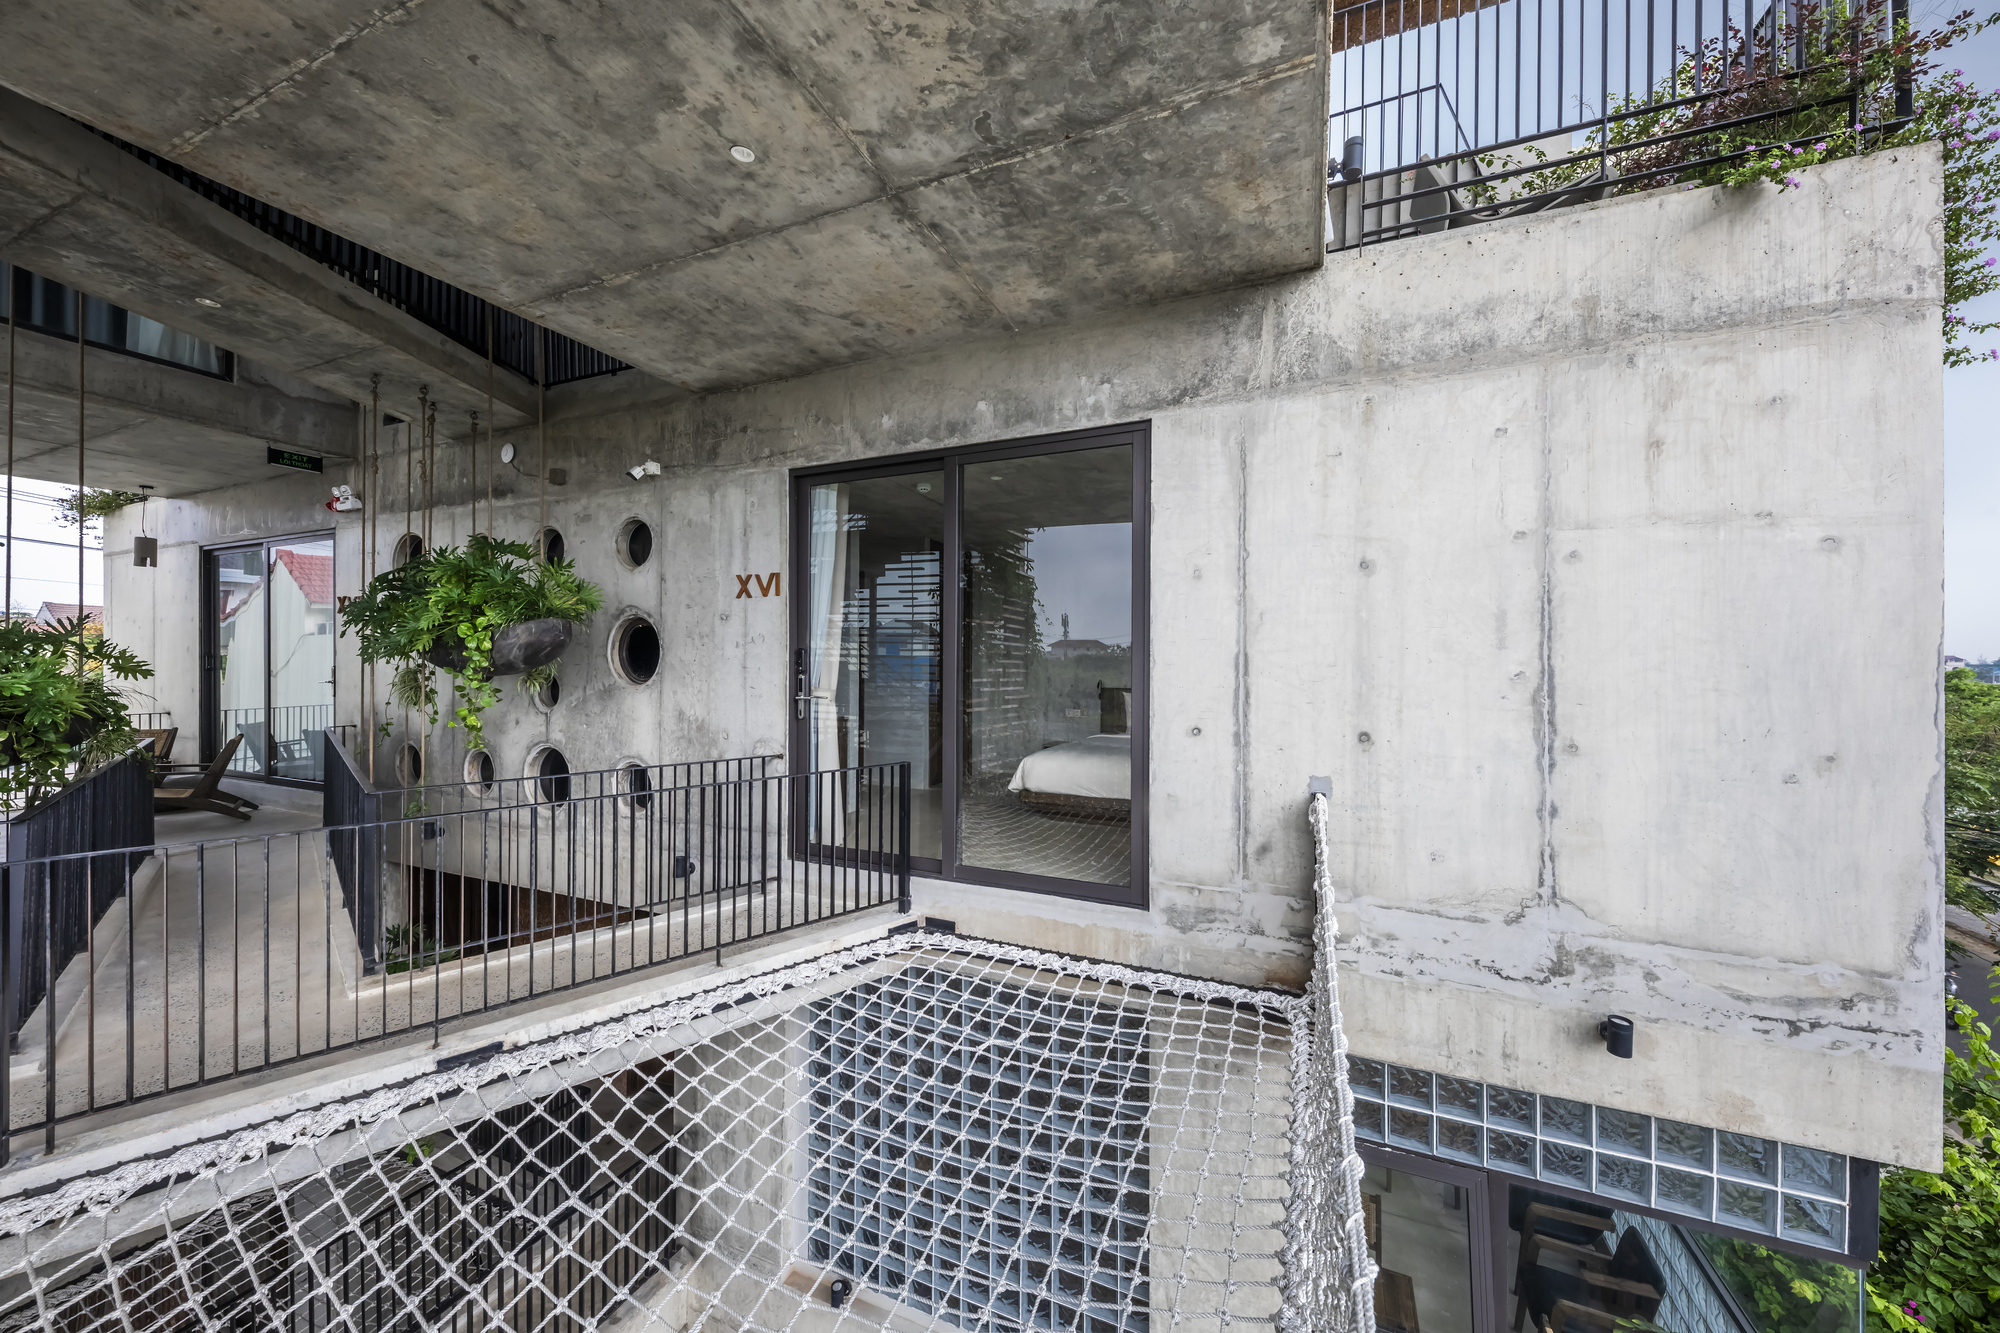 图片[8]|渔网连接悬浮水泥盒，Thalia 精品酒店 / Ho Khue Architects|ART-Arrakis | 建筑室内设计的创新与灵感